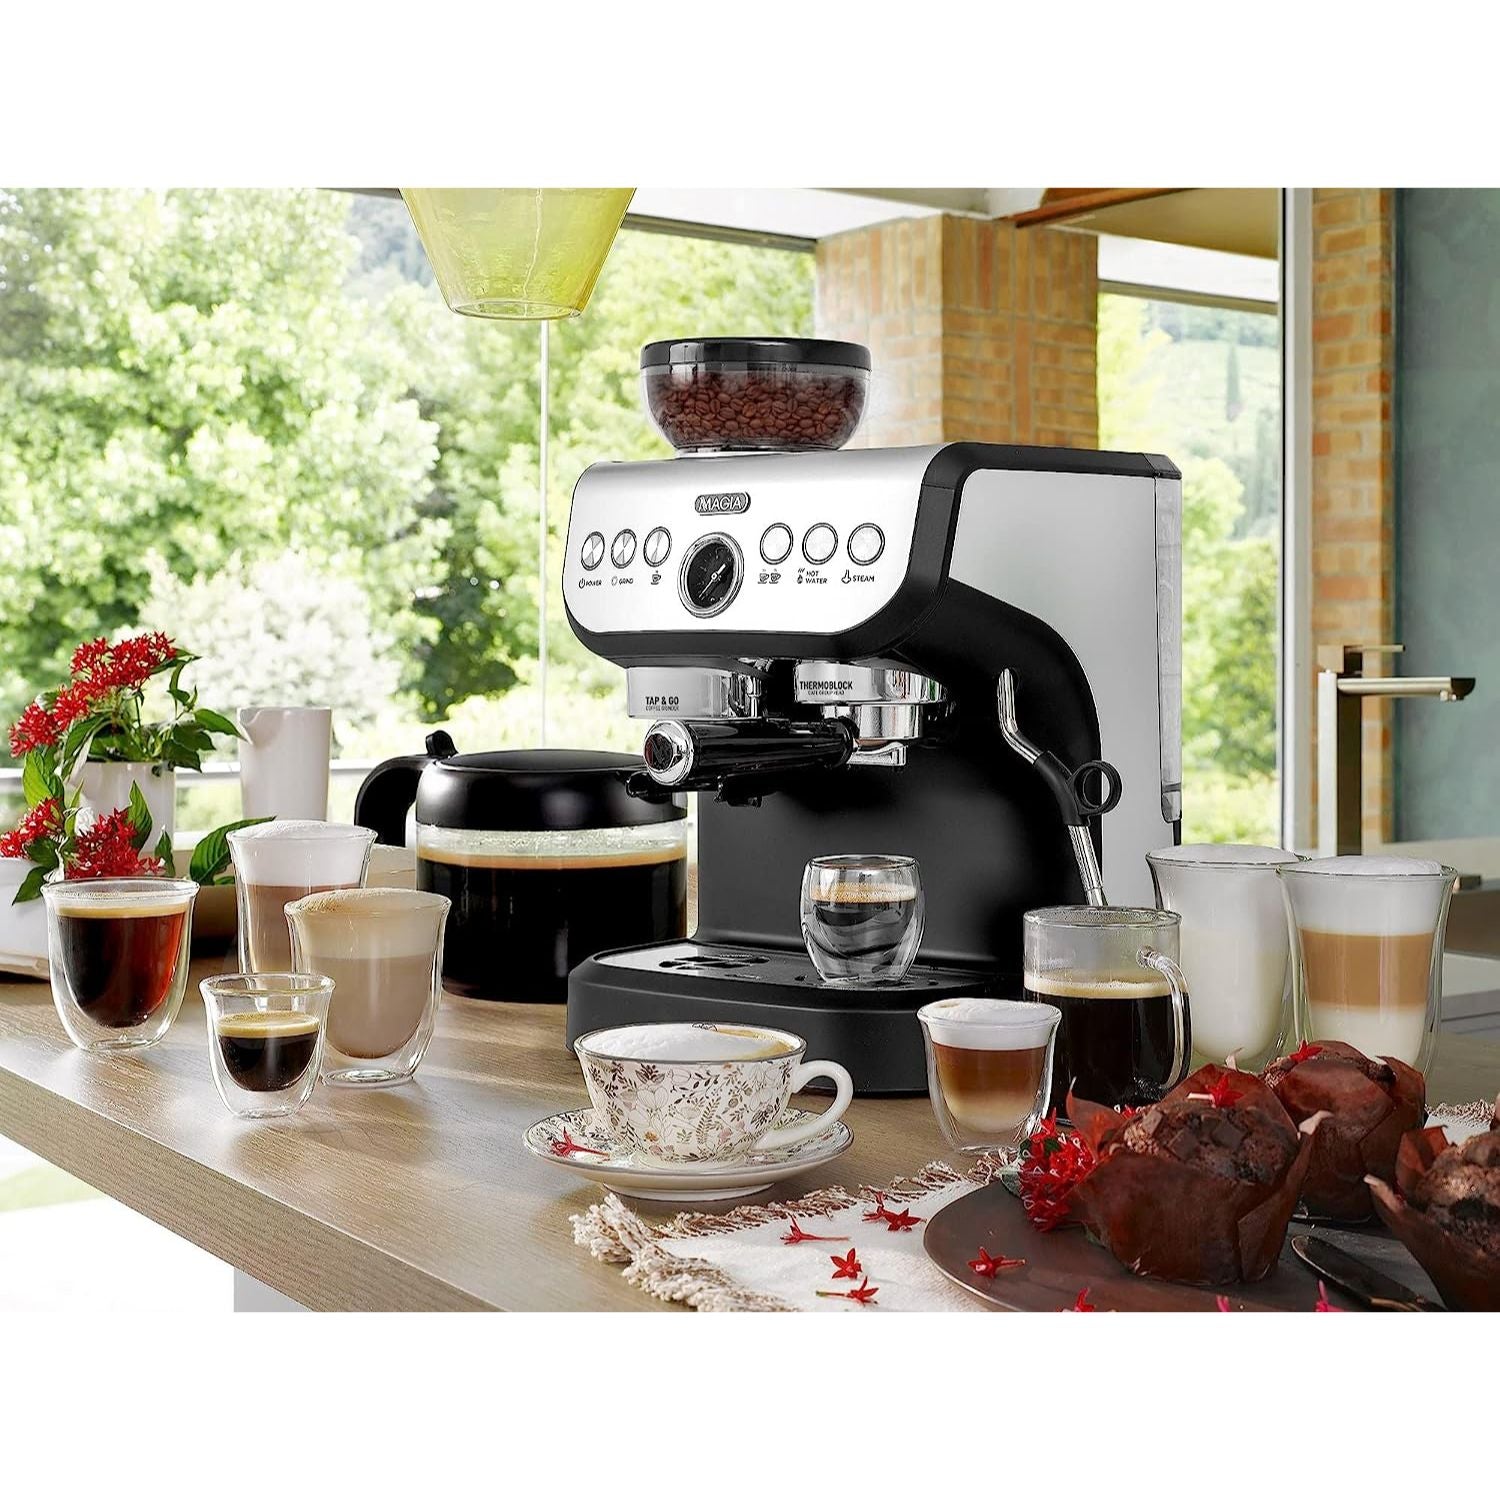 Sage Bambino Plus Pump Espresso Coffee Machine in Black S